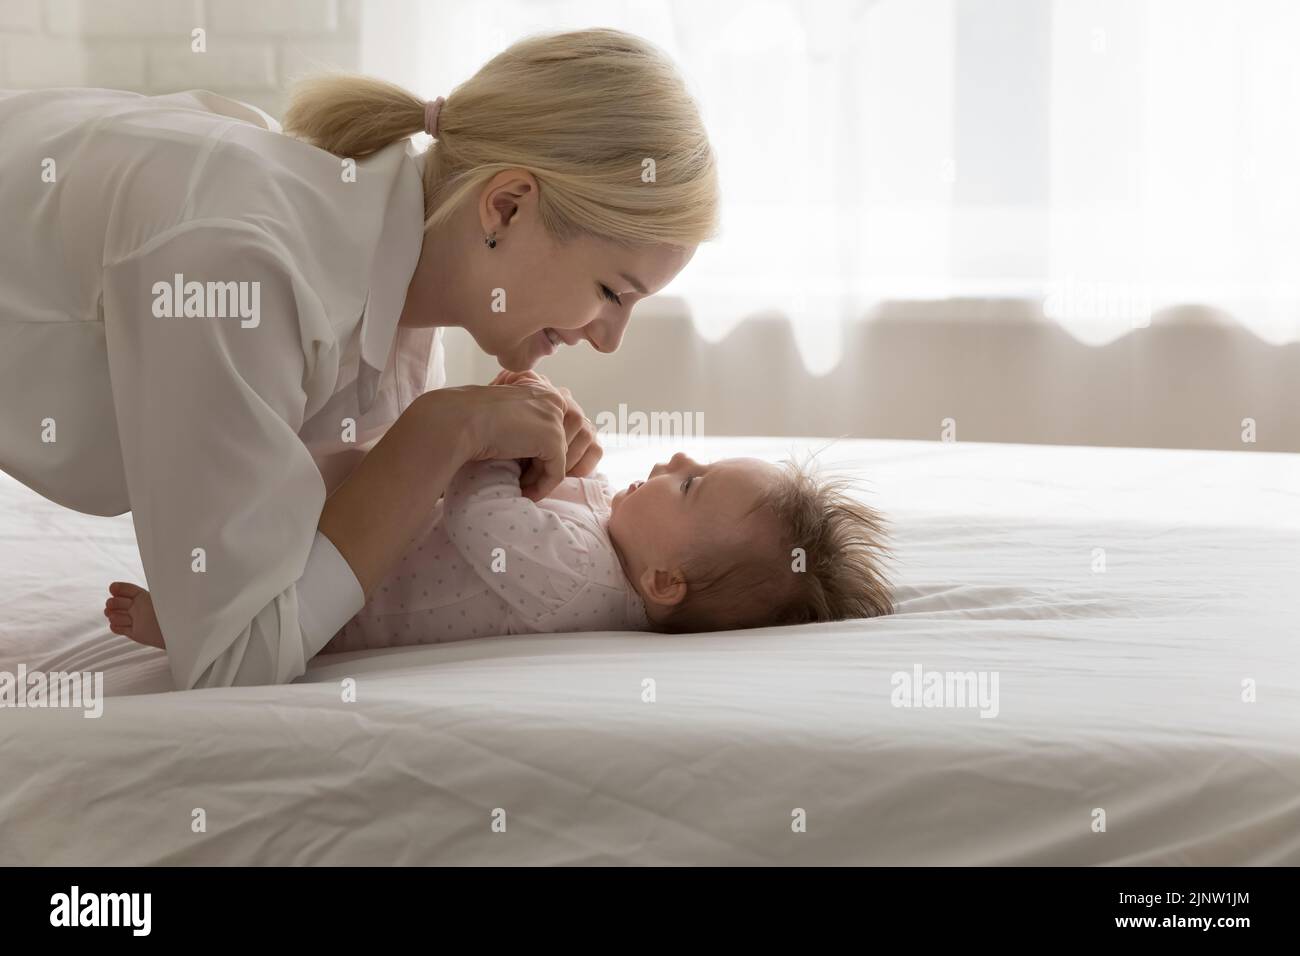 Mutter verbringt unbezahlbare Zeit, süße Momente mit dem neugeborenen Baby Stockfoto